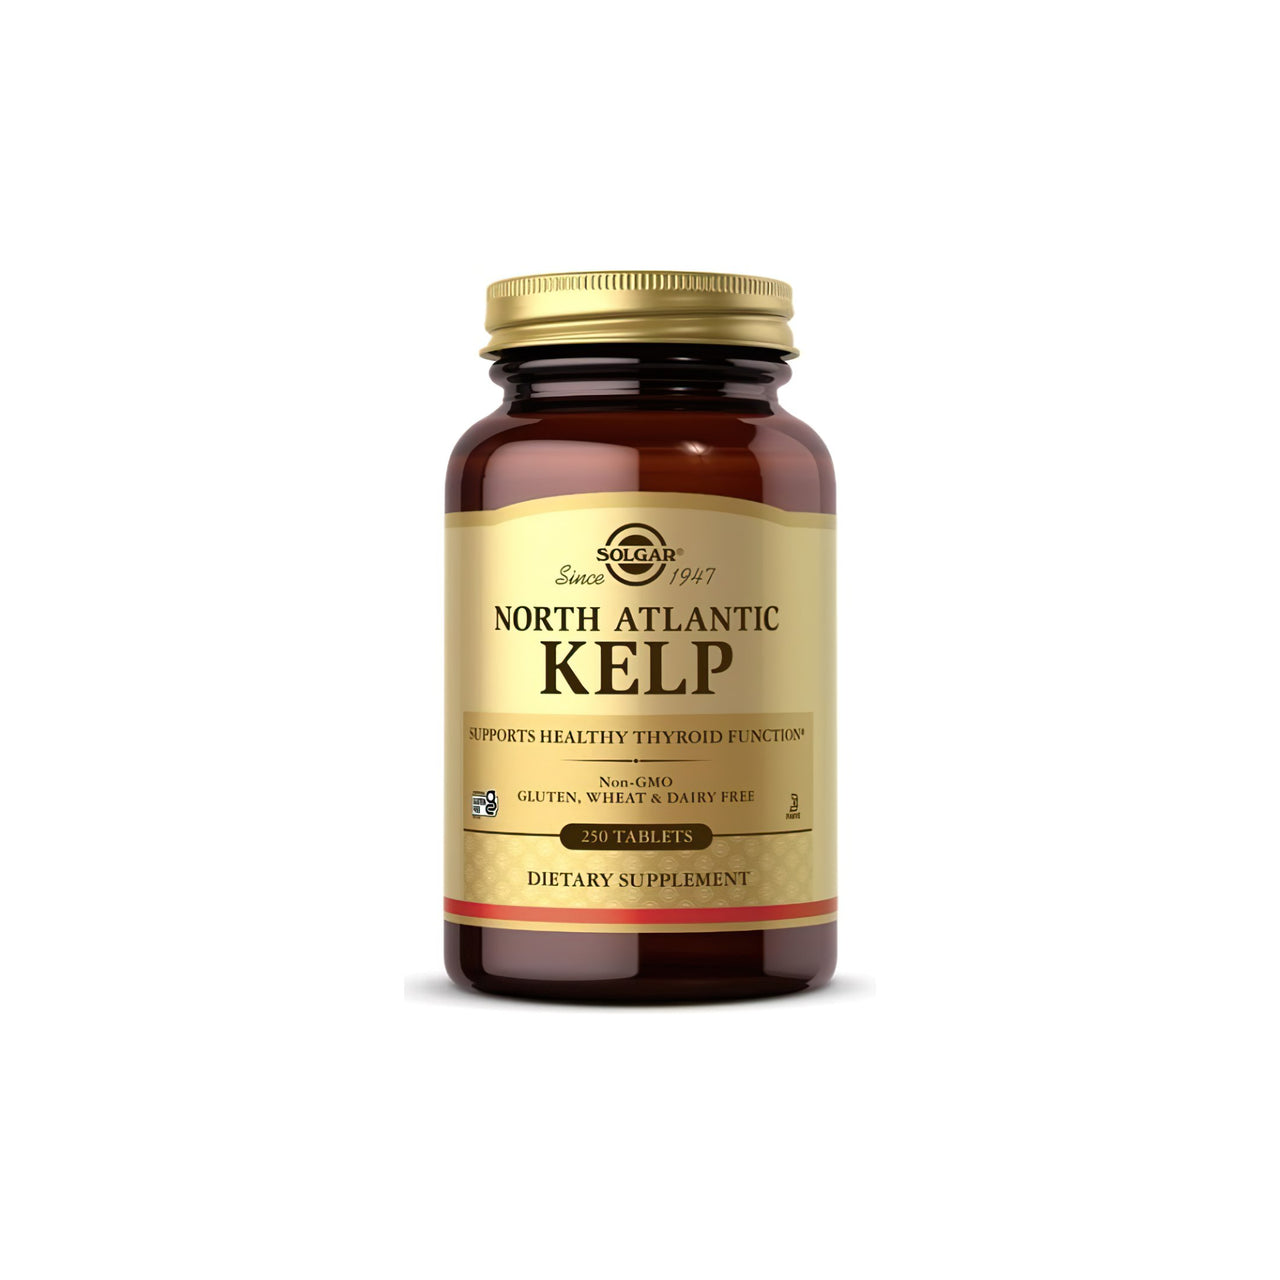 Um frasco de Solgar North Atlantic Kelp 200 mcg 250 Tablets, rico em iodo para um funcionamento ótimo da glândula tiroide.